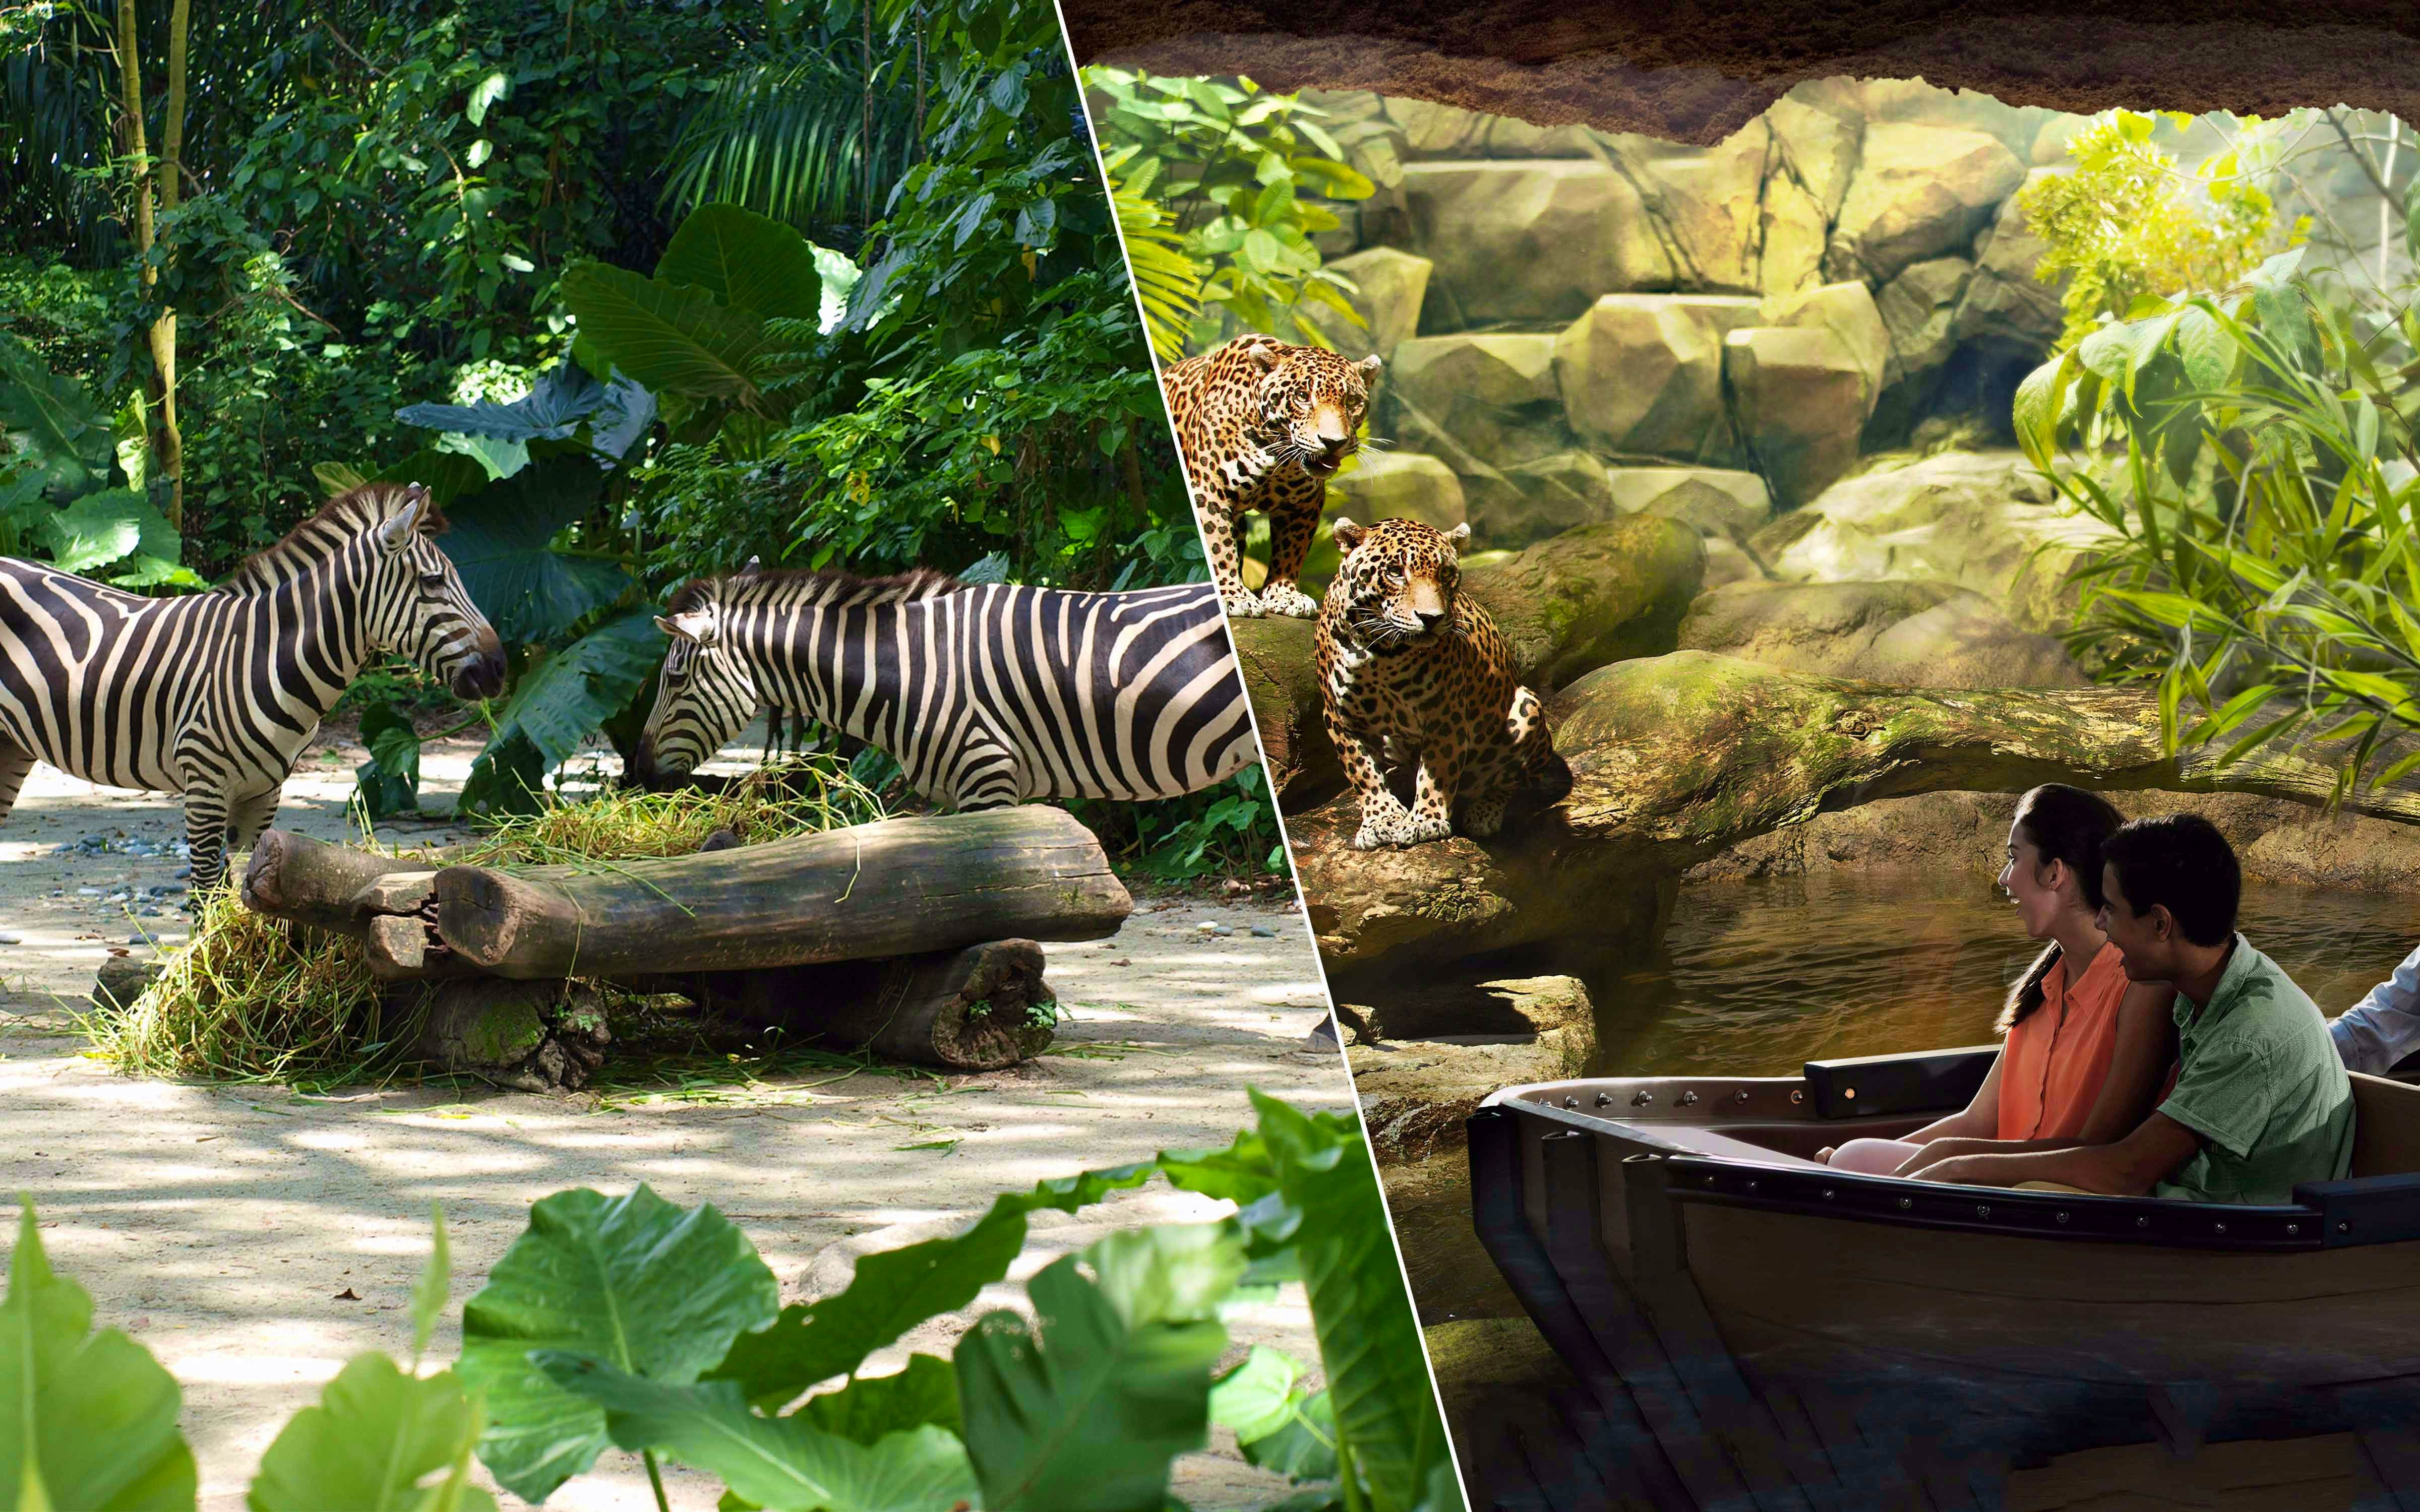 Singapore Zoo+River Safari+ Night Safari with Private Transfers